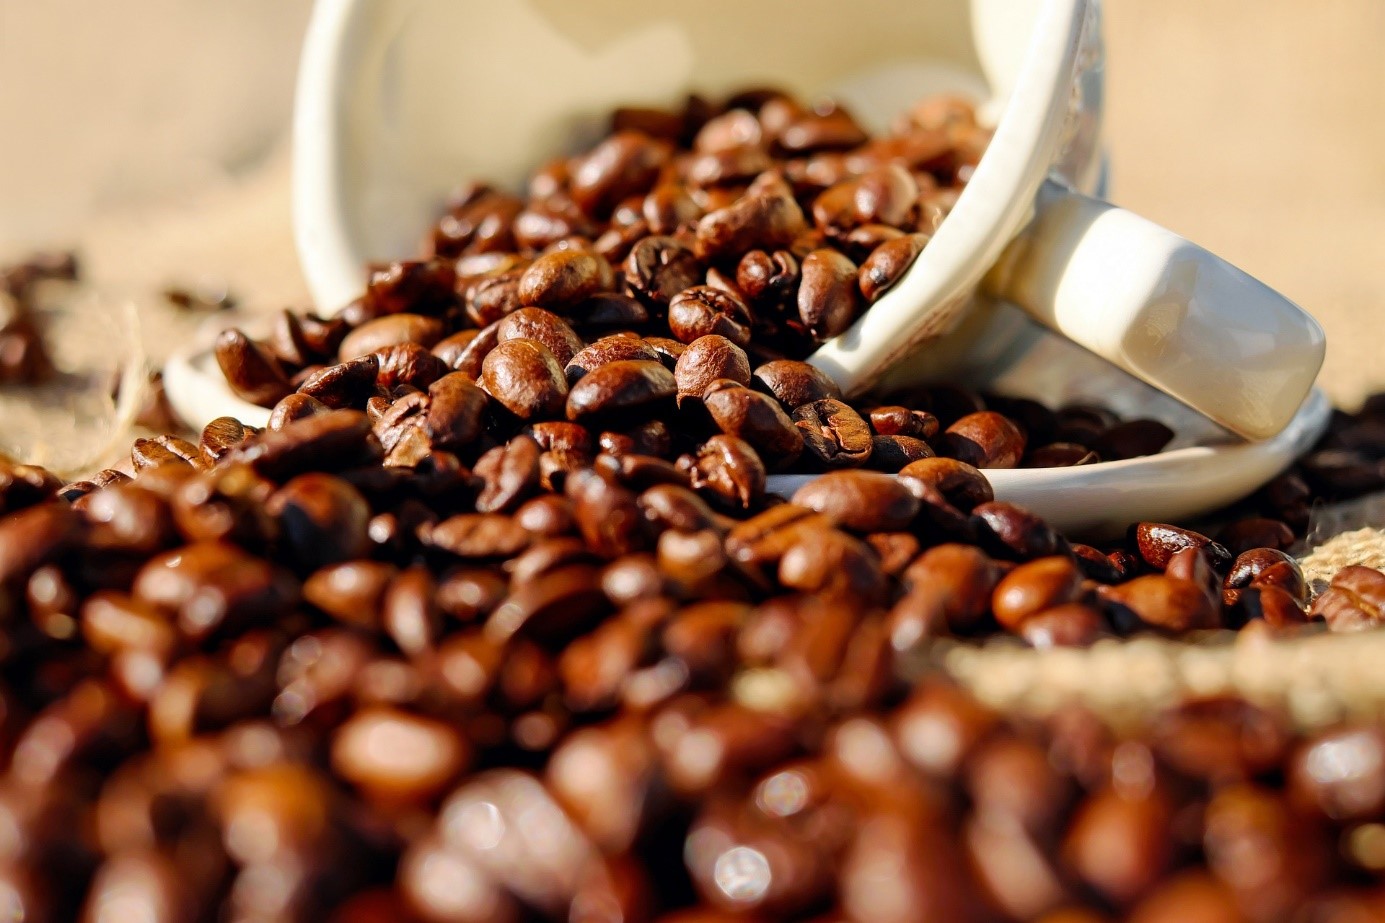 De inhemska kaffepriserna i Vietnam, världens största leverantör av robustabönor, nådde nästan den högsta nivån som Vietnamesiska kaffepriser handlats till på sex månaders under veckan. Rusningen av kaffepriset följer en ökning av globala priser och begränsade tillgångar, medan premierna sjönk i Indonesien när nya bönor började byggas upp.